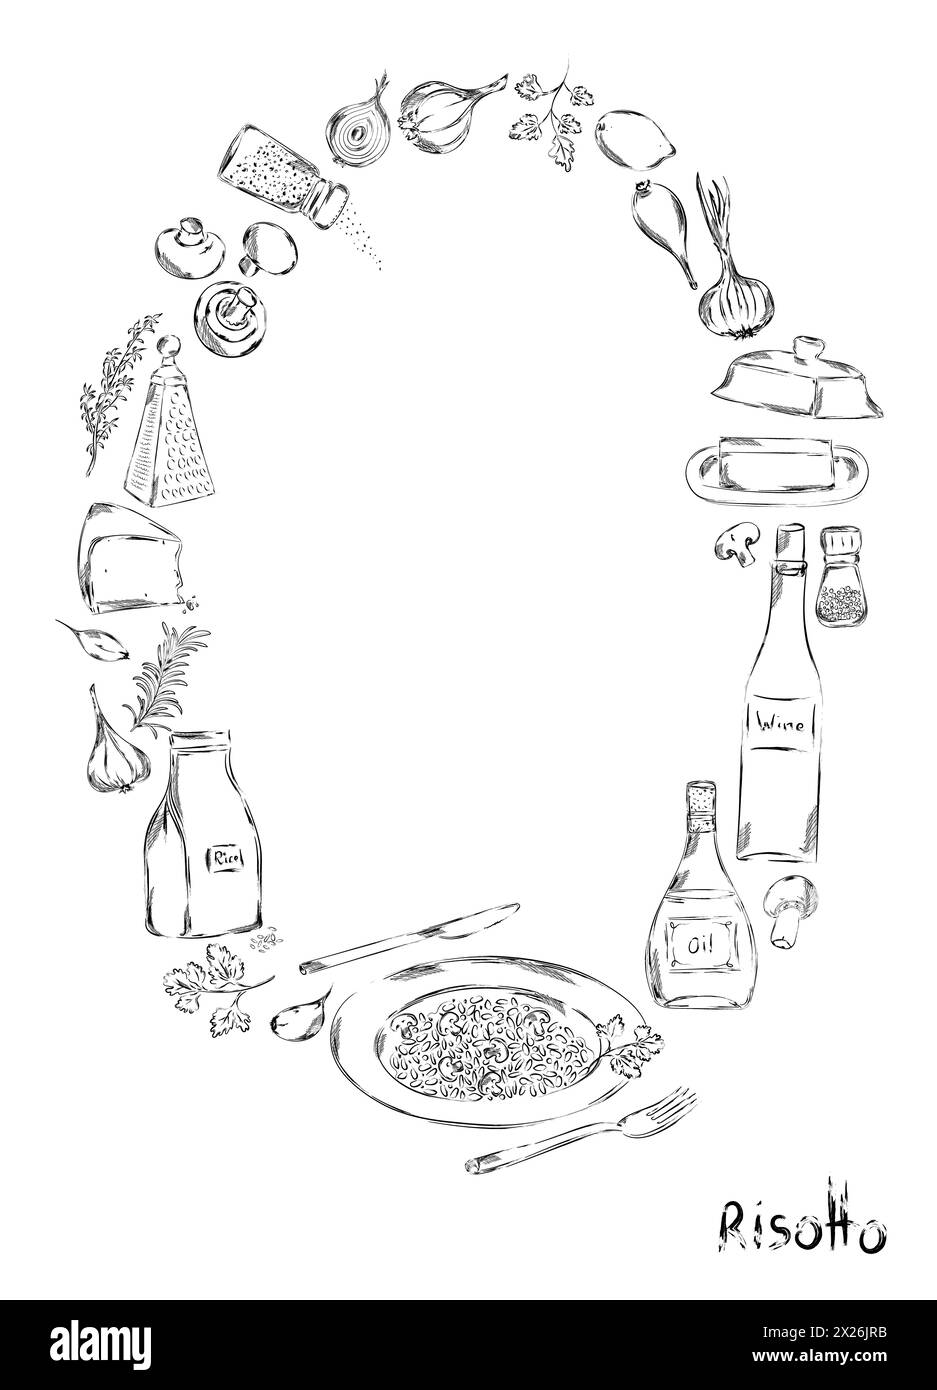 Grafisches Risotto-Poster, handgezeichnete Vektor-Illustration. Zutaten für ein italienisches Restaurant oder mediterrane Küche. Risotto Food Elements Clip Art. Feinkost Stockfoto